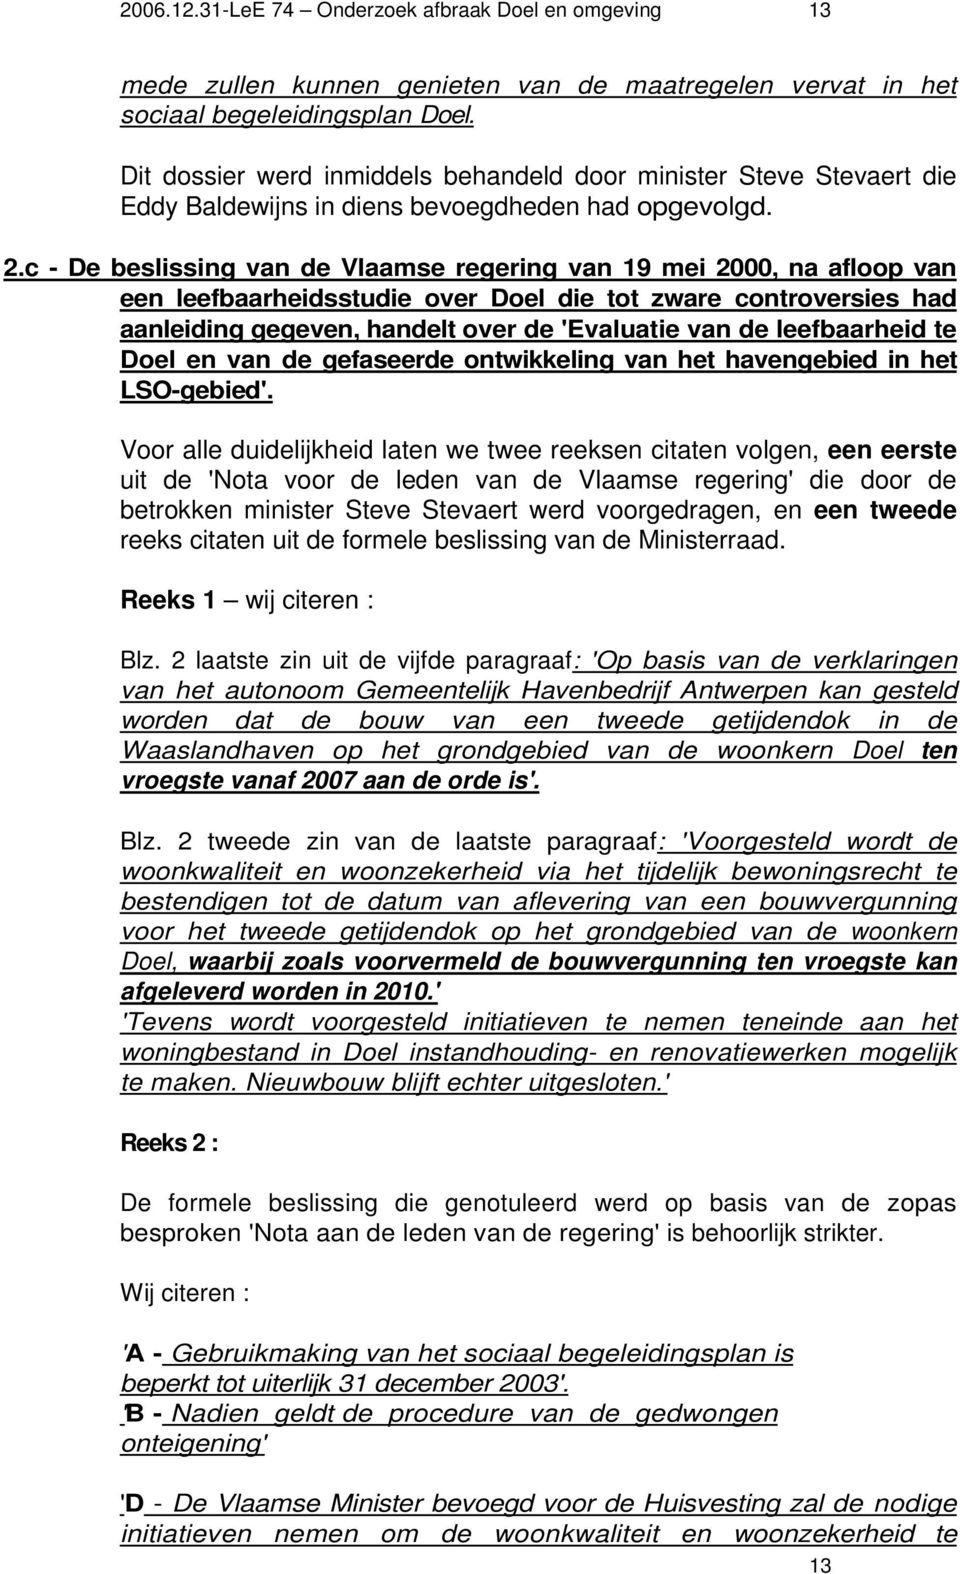 c - De beslissing van de Vlaamse regering van 19 mei 2000, na afloop van een leefbaarheidsstudie over Doel die tot zware controversies had aanleiding gegeven, handelt over de 'Evaluatie van de